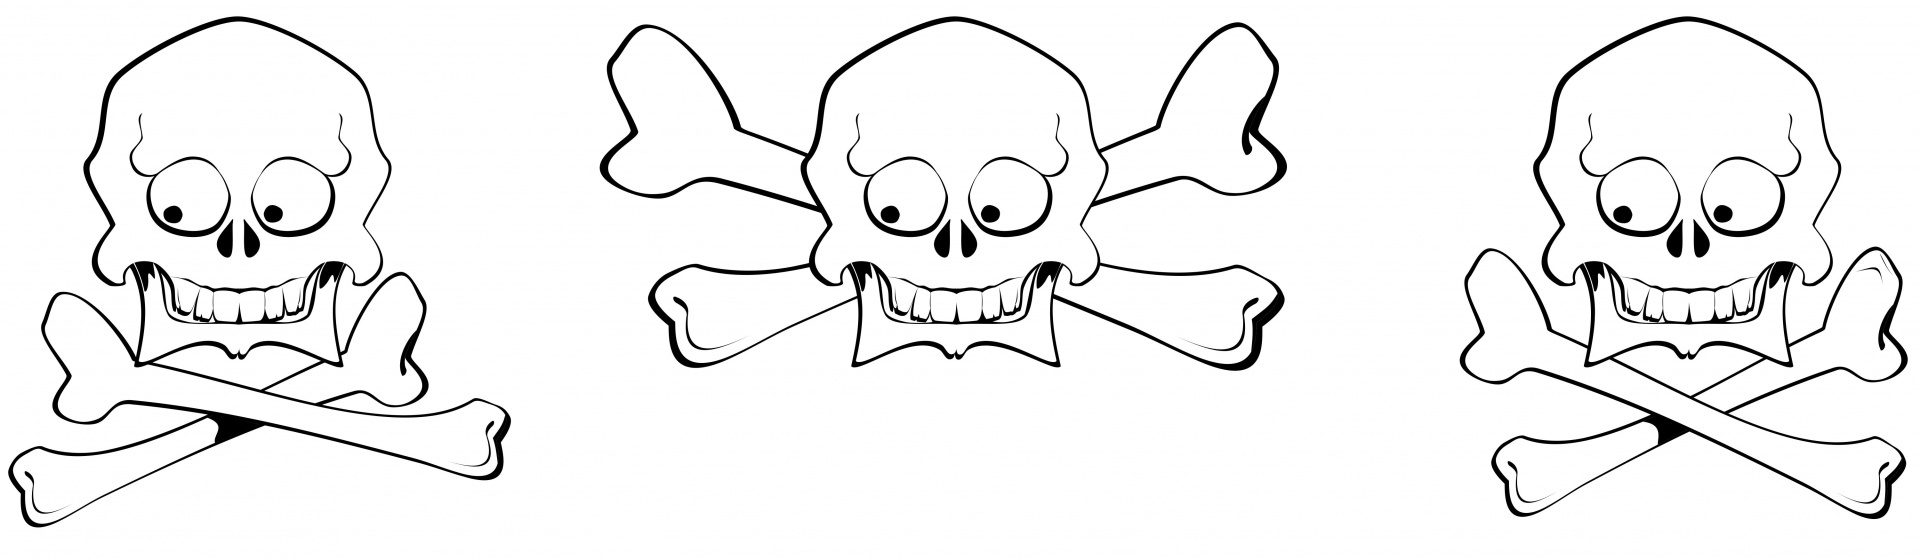 Cartoon Skull And Crossbones